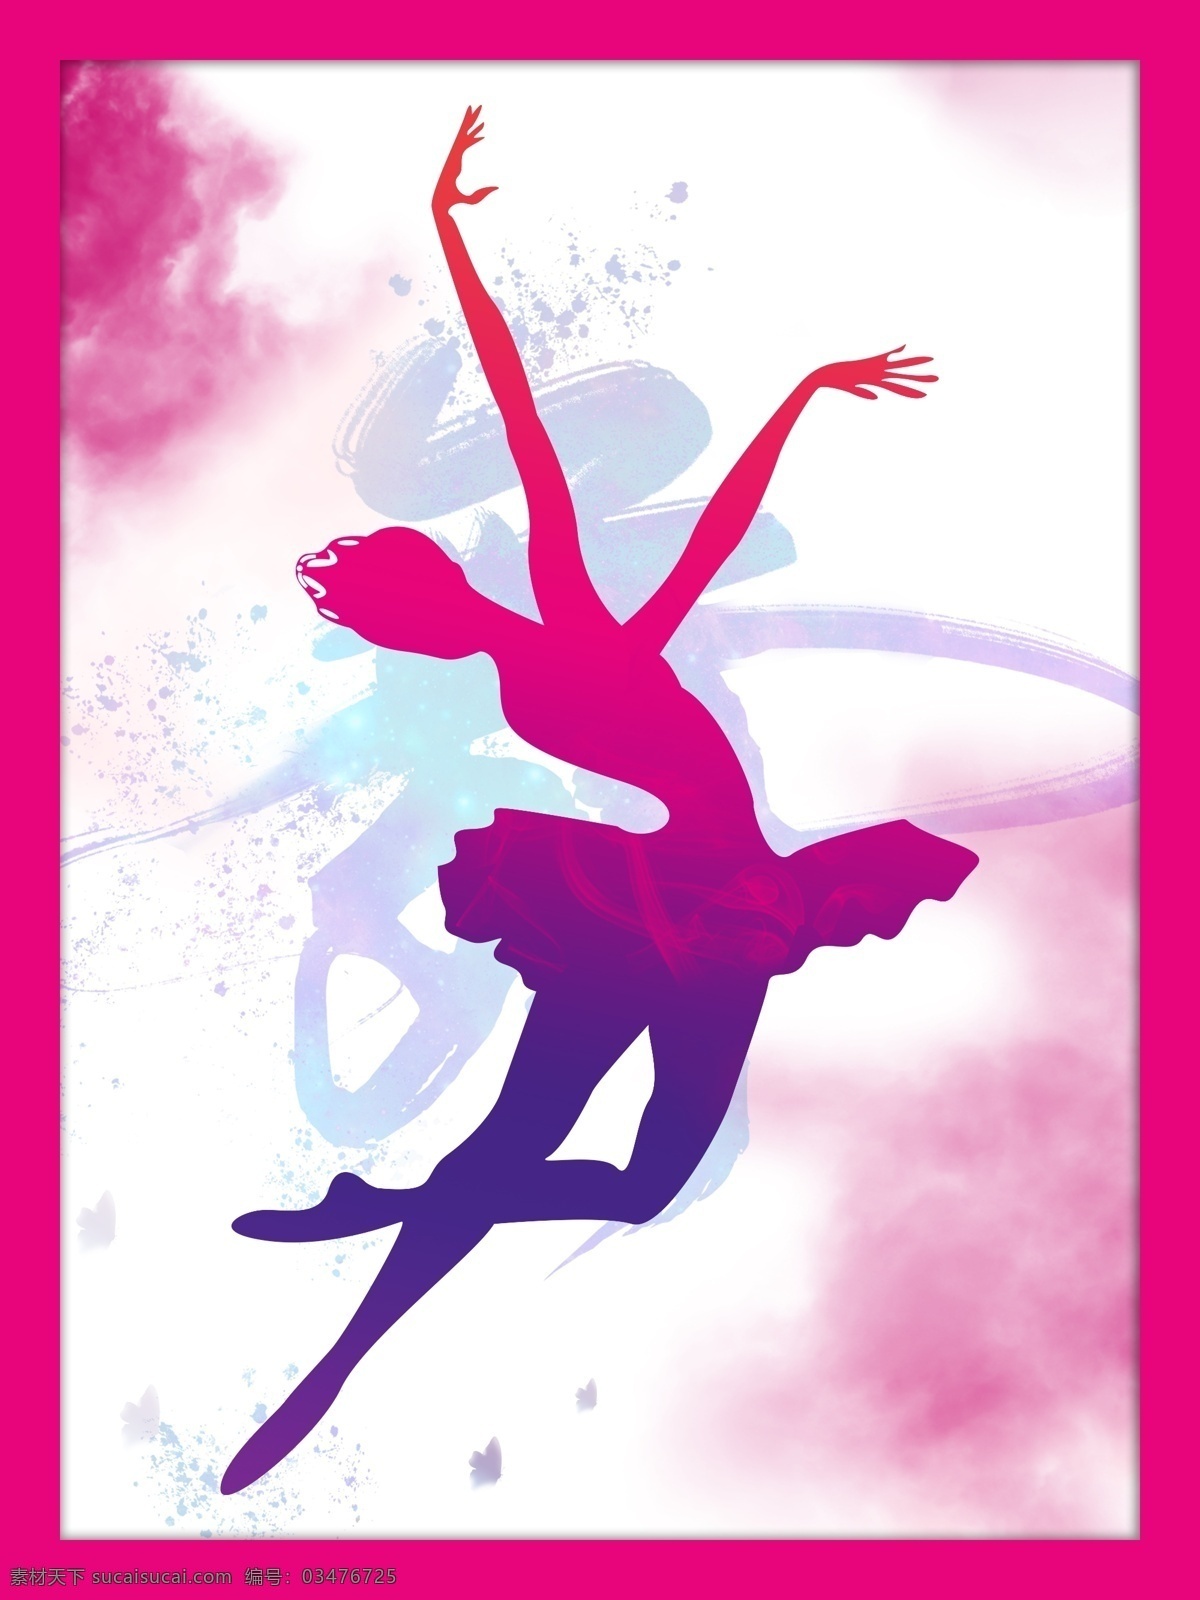 舞蹈室 宣传画 舞蹈 舞者 芭蕾 矢量图形 彩色 浓墨底纹 女 舞蹈室挂画 墙体挂画 室内广告设计